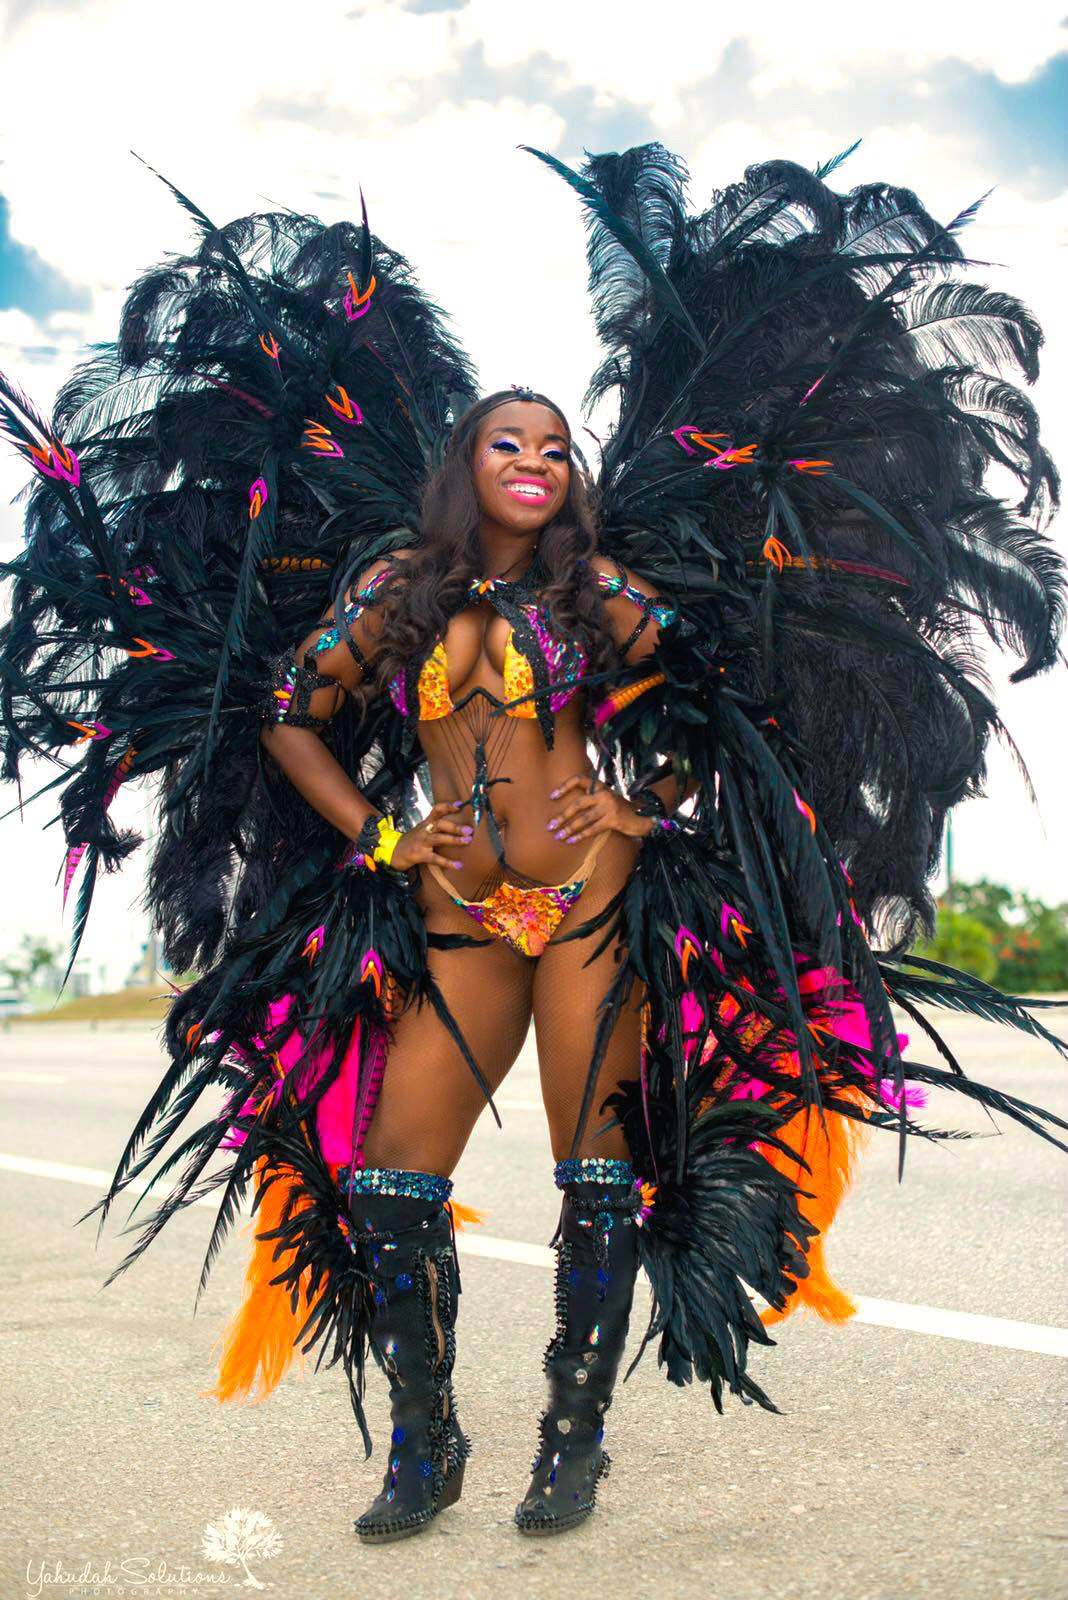 Source: Trinidad & Tobago Carnival Costume Photos